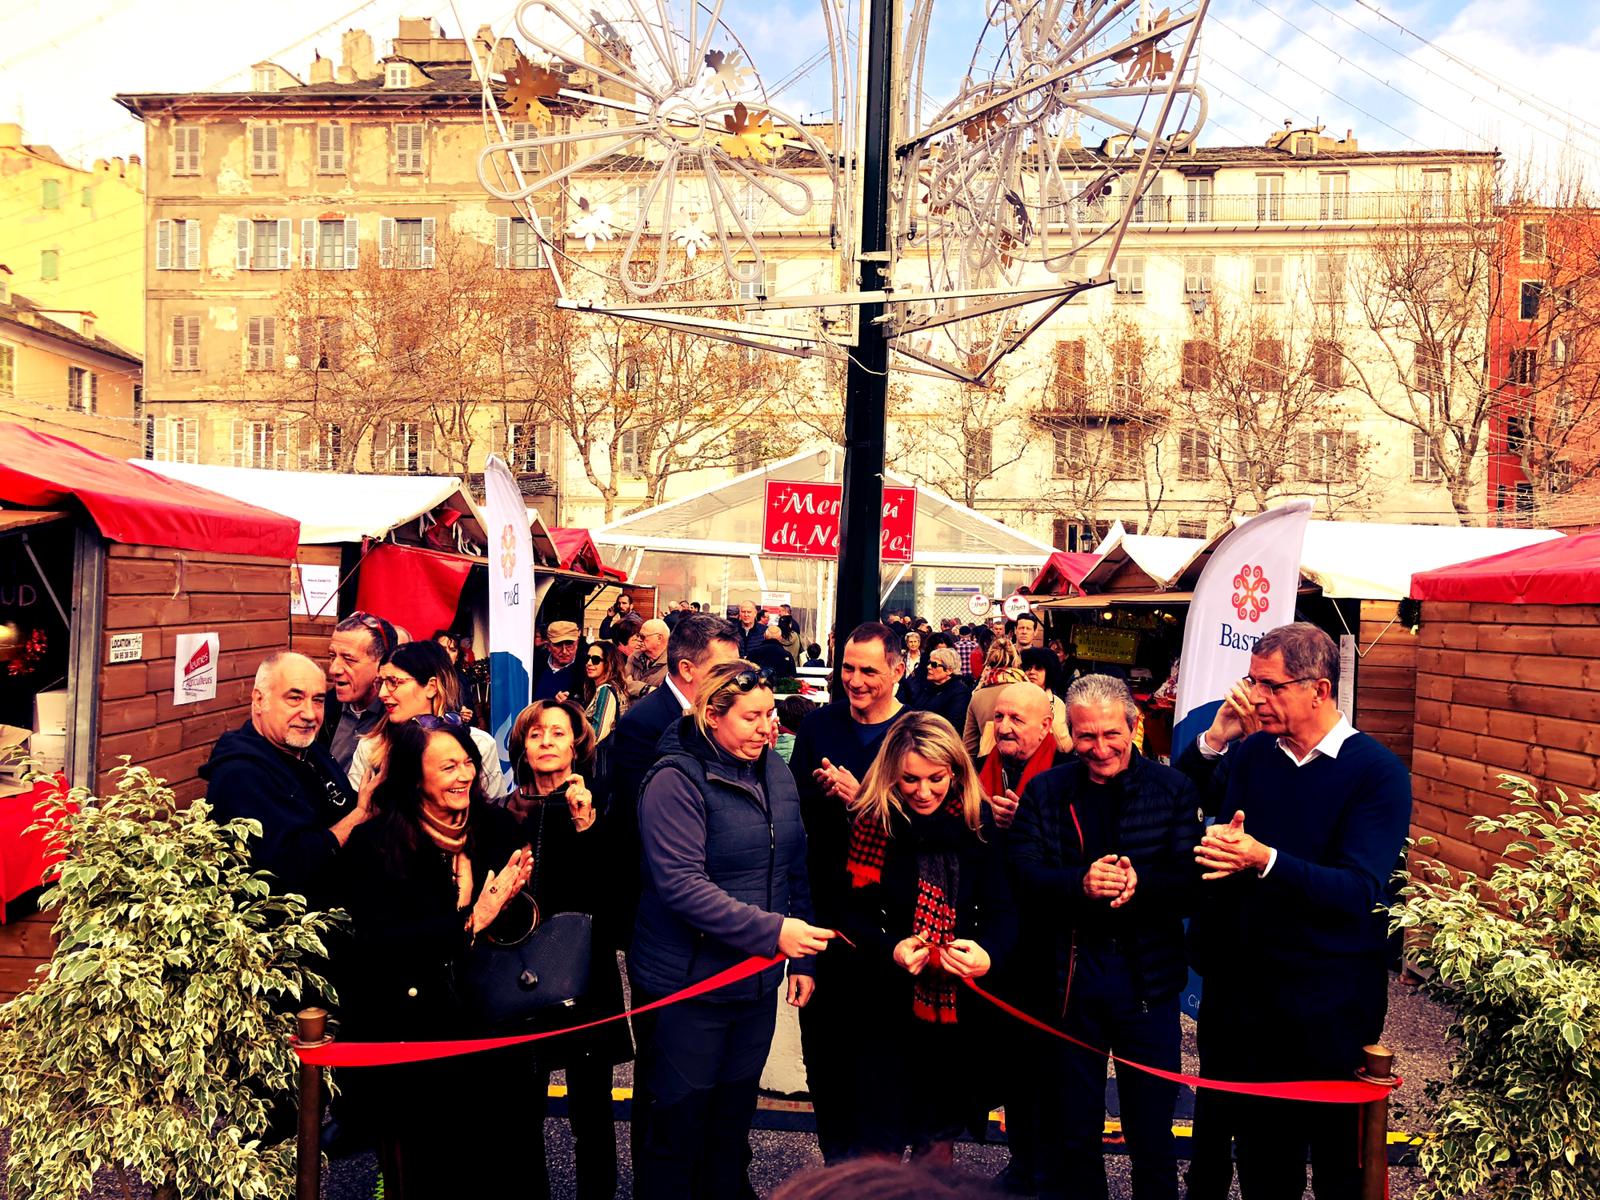 EN IMAGES - La foule déjà au rendez-vous pour l’ouverture du marché de Noël de Bastia